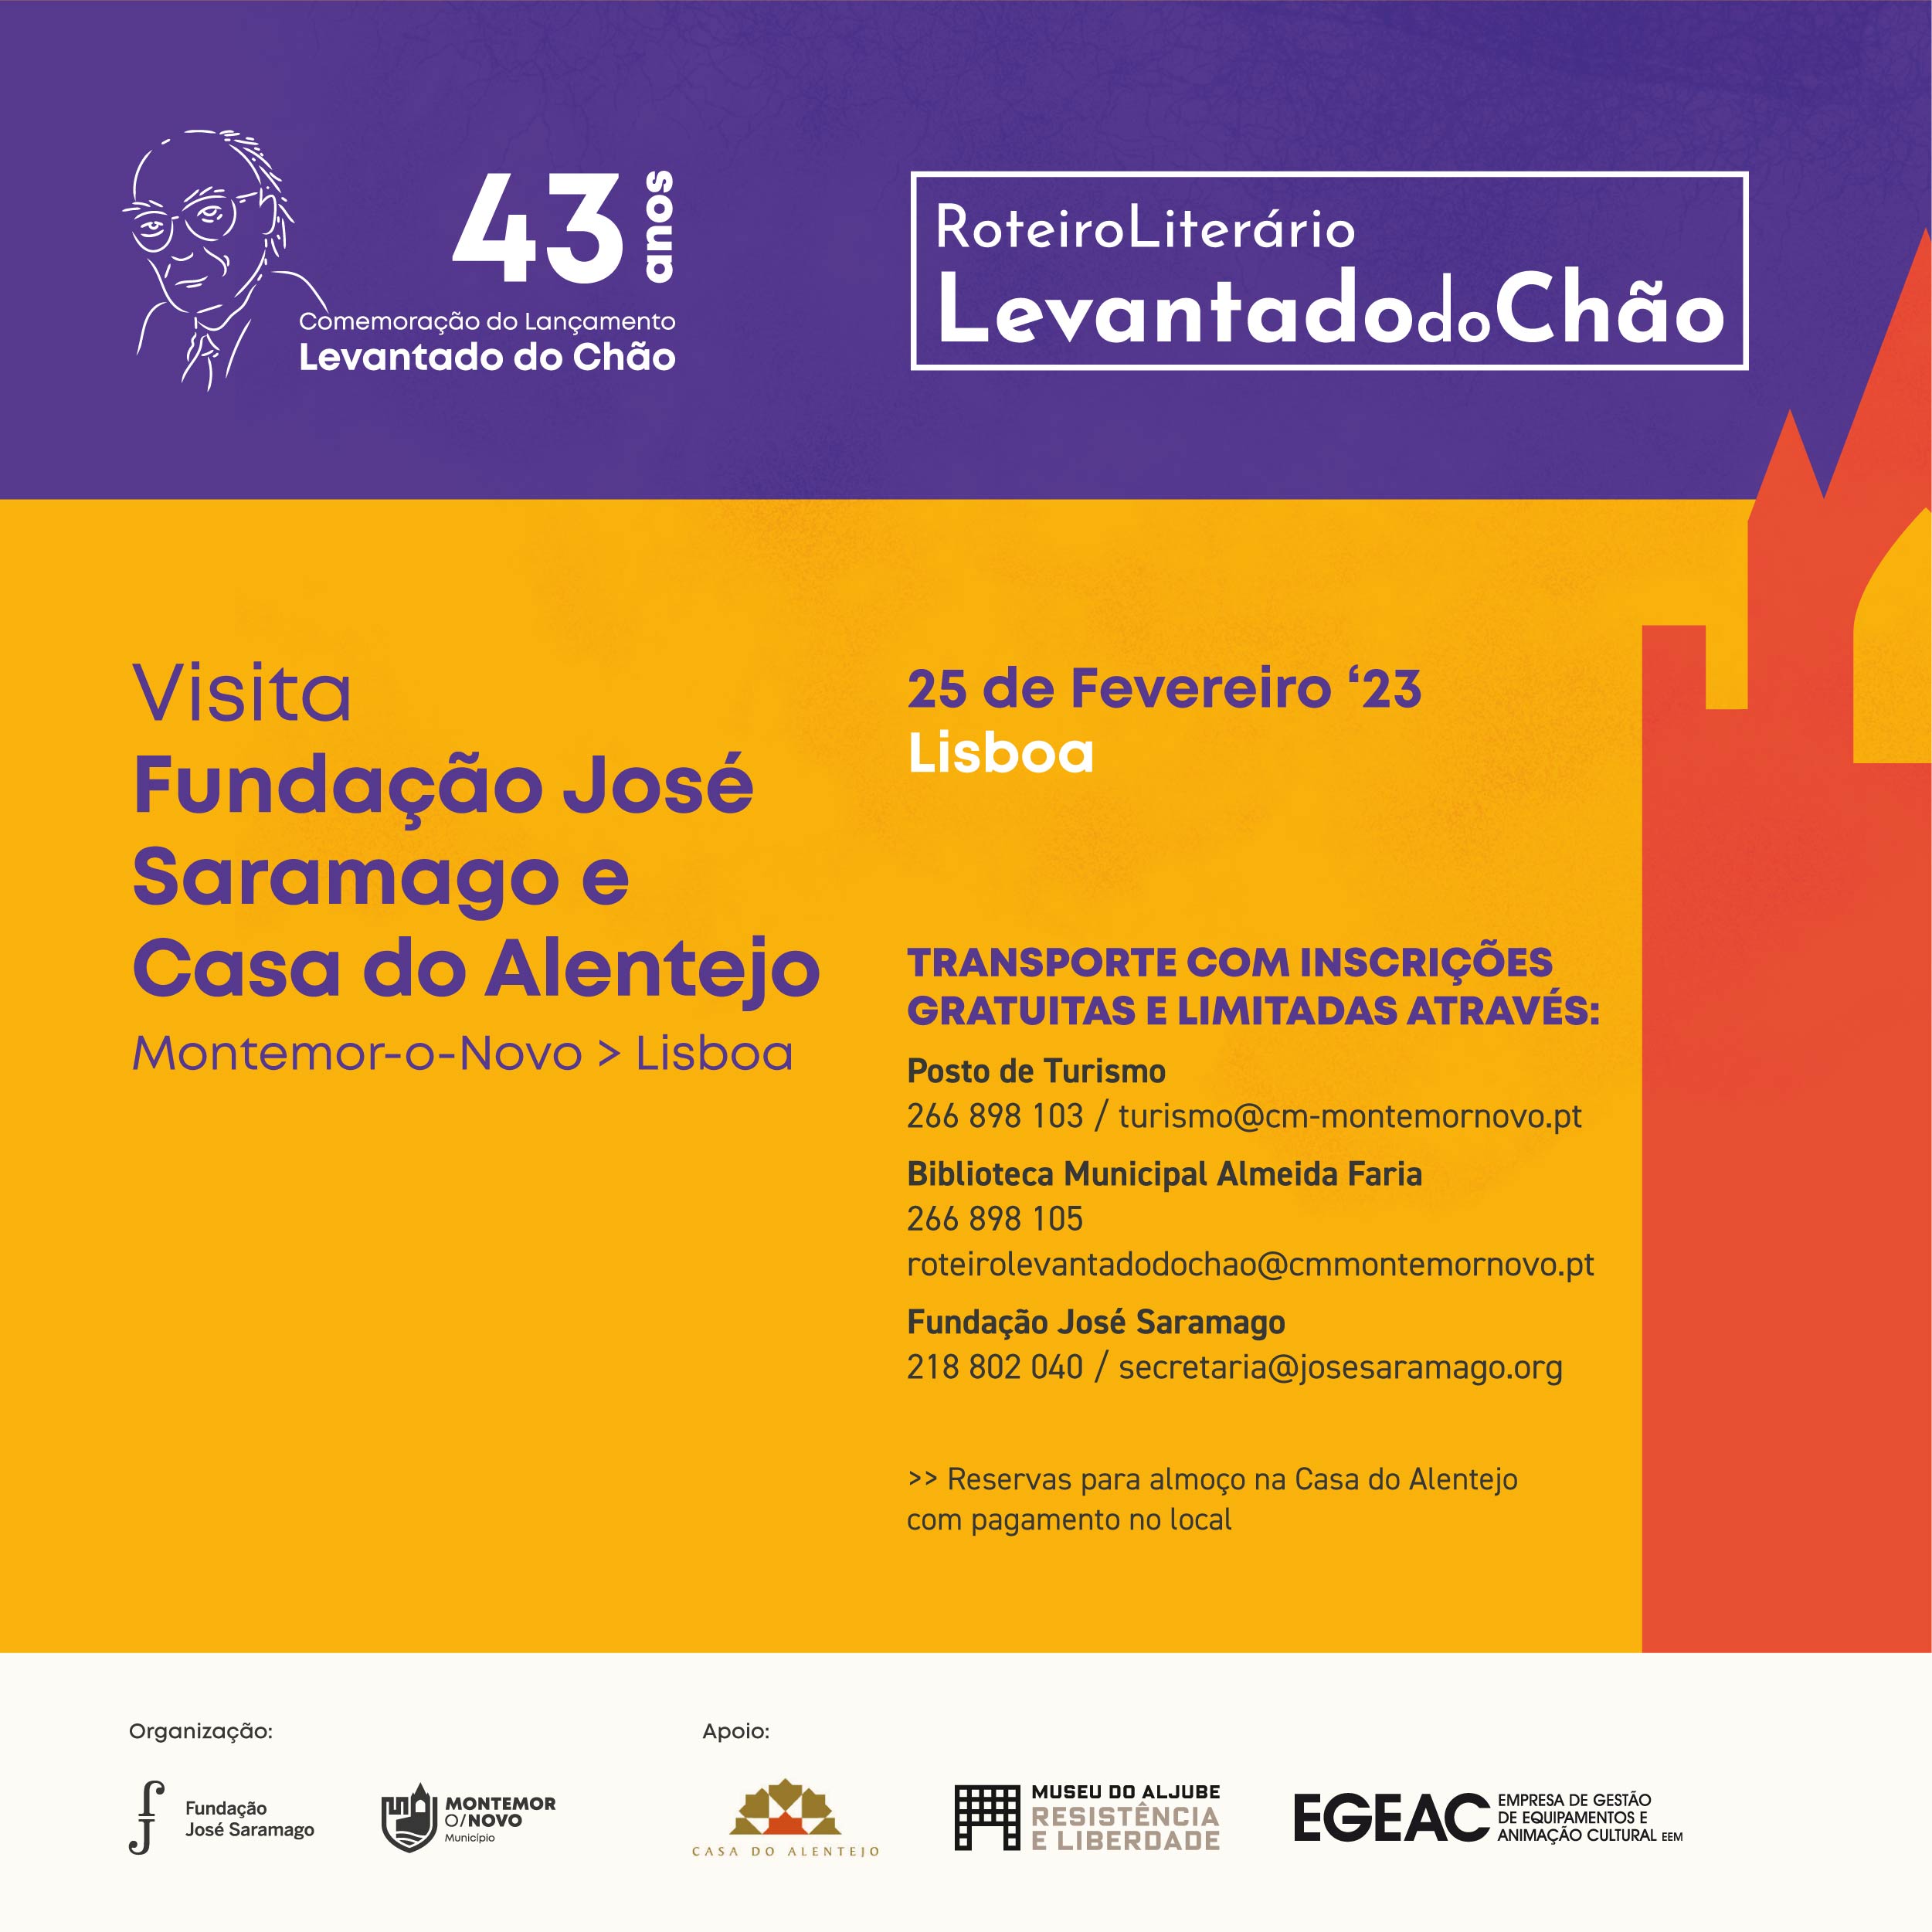 43 anos de Levantado do Chão-25 fevereiro de 2023. Visita a Fundação José Saramago e Casa do Alentejo, Lisboa